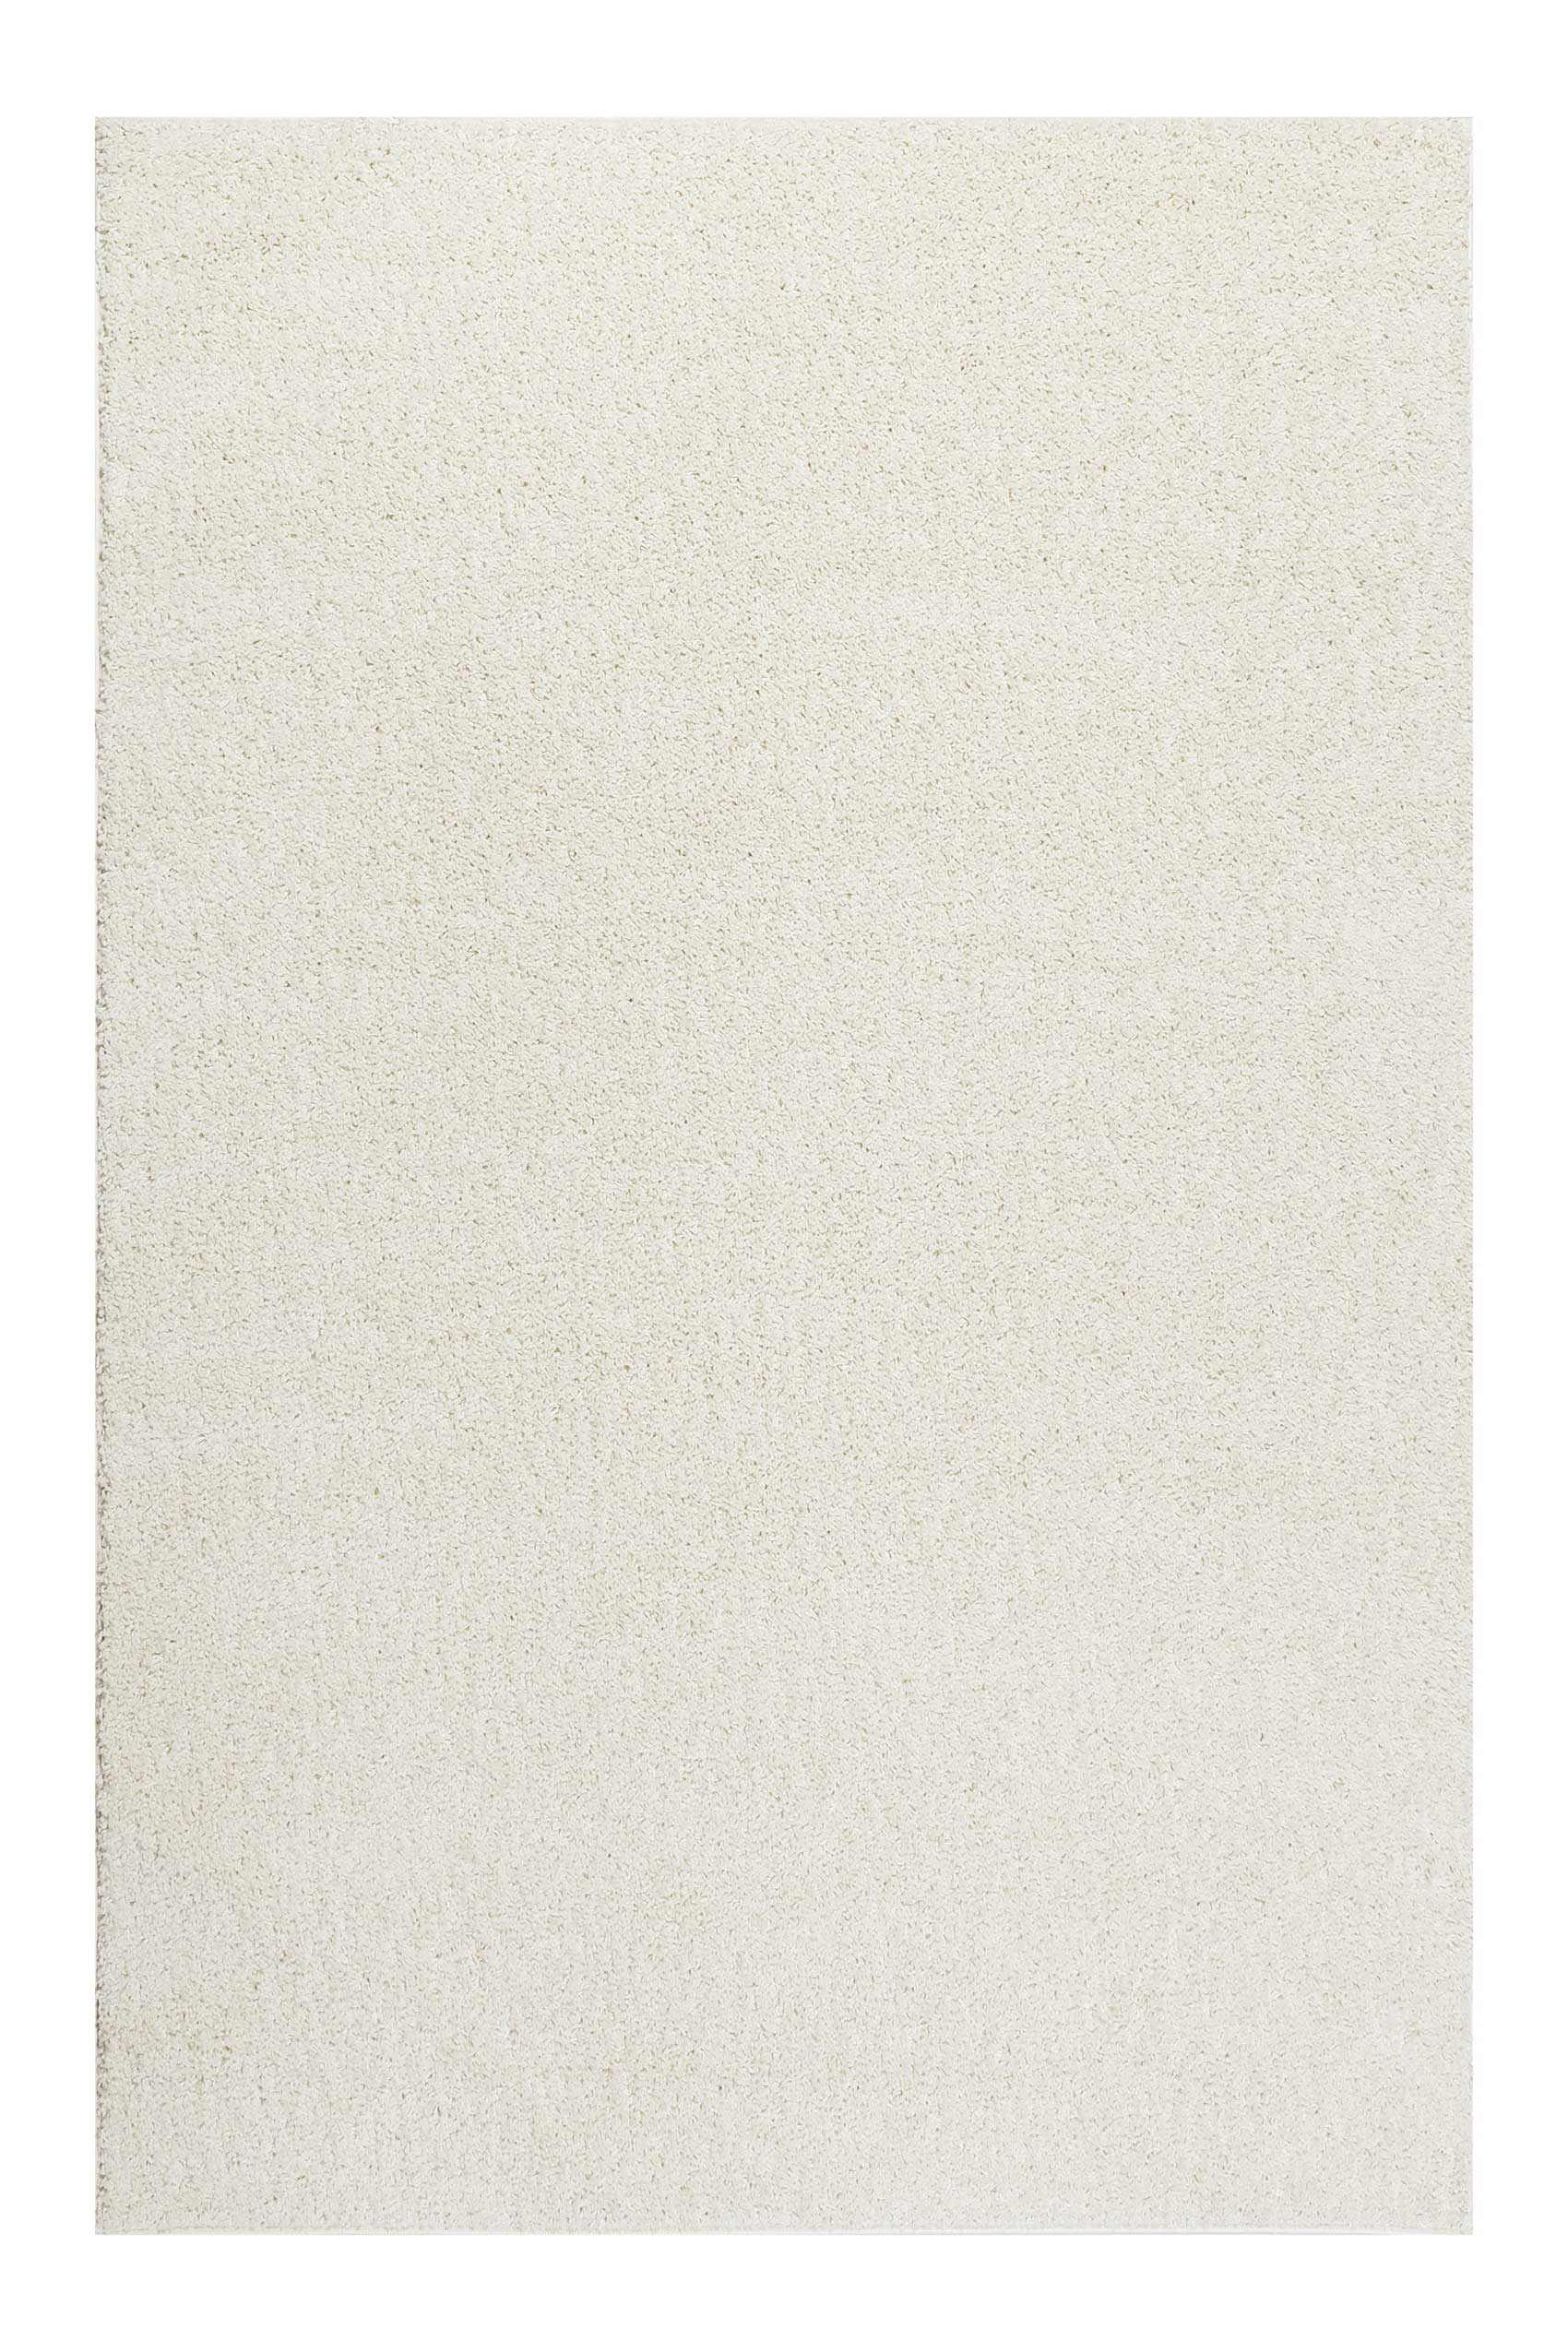 Esprit Teppich Creme Weiß Hochflor » #Whisper Shag « - Ansicht 1